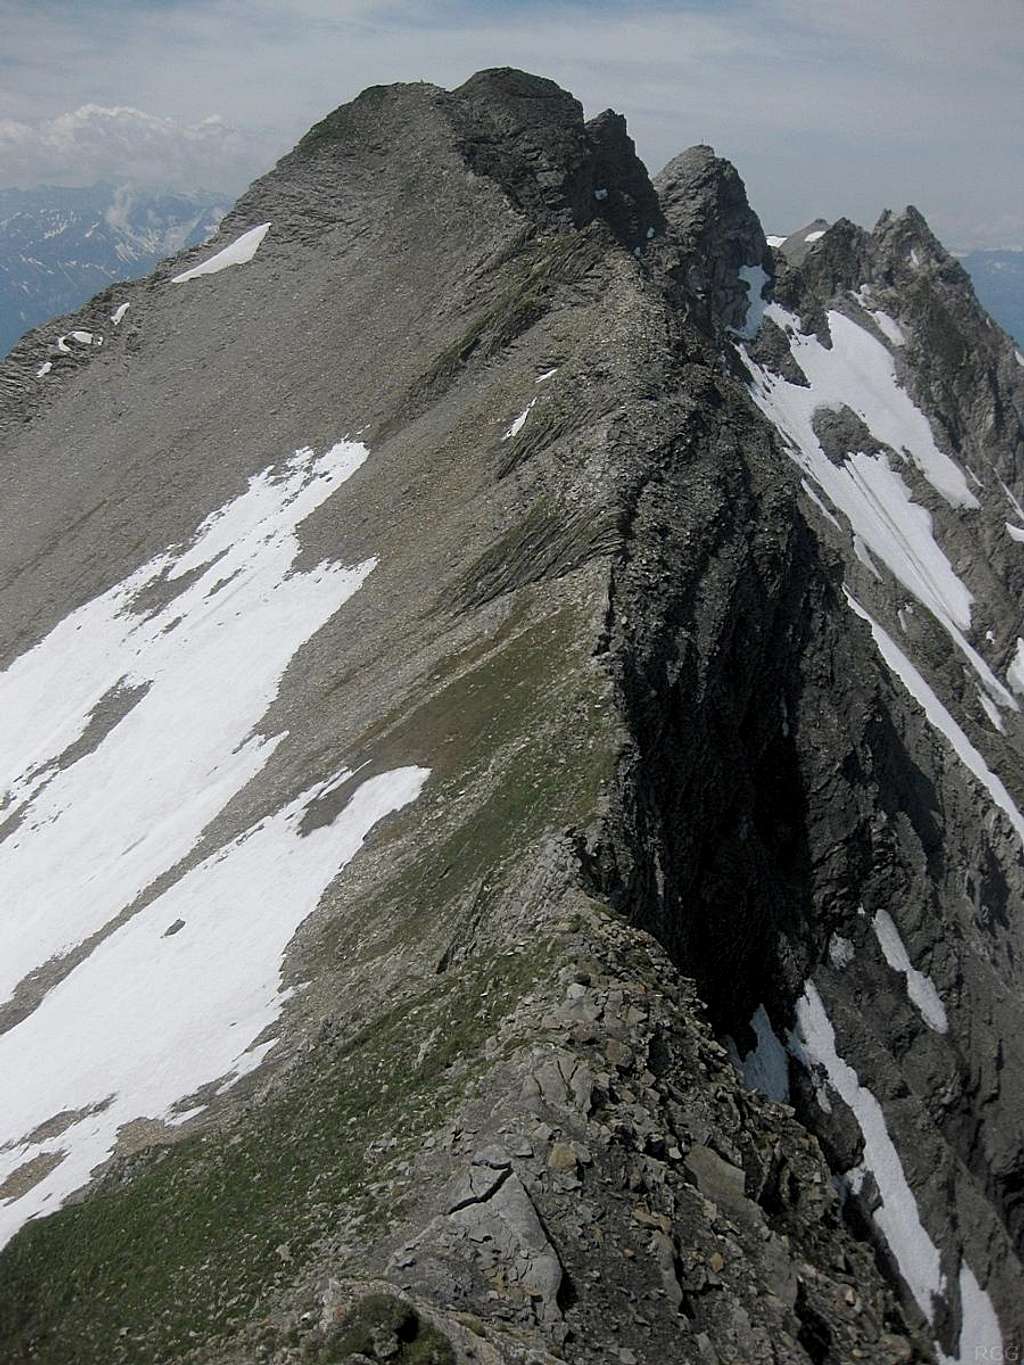 Vorder Grauspitz from somewhere on the steep west ridge of Schwarzhorn